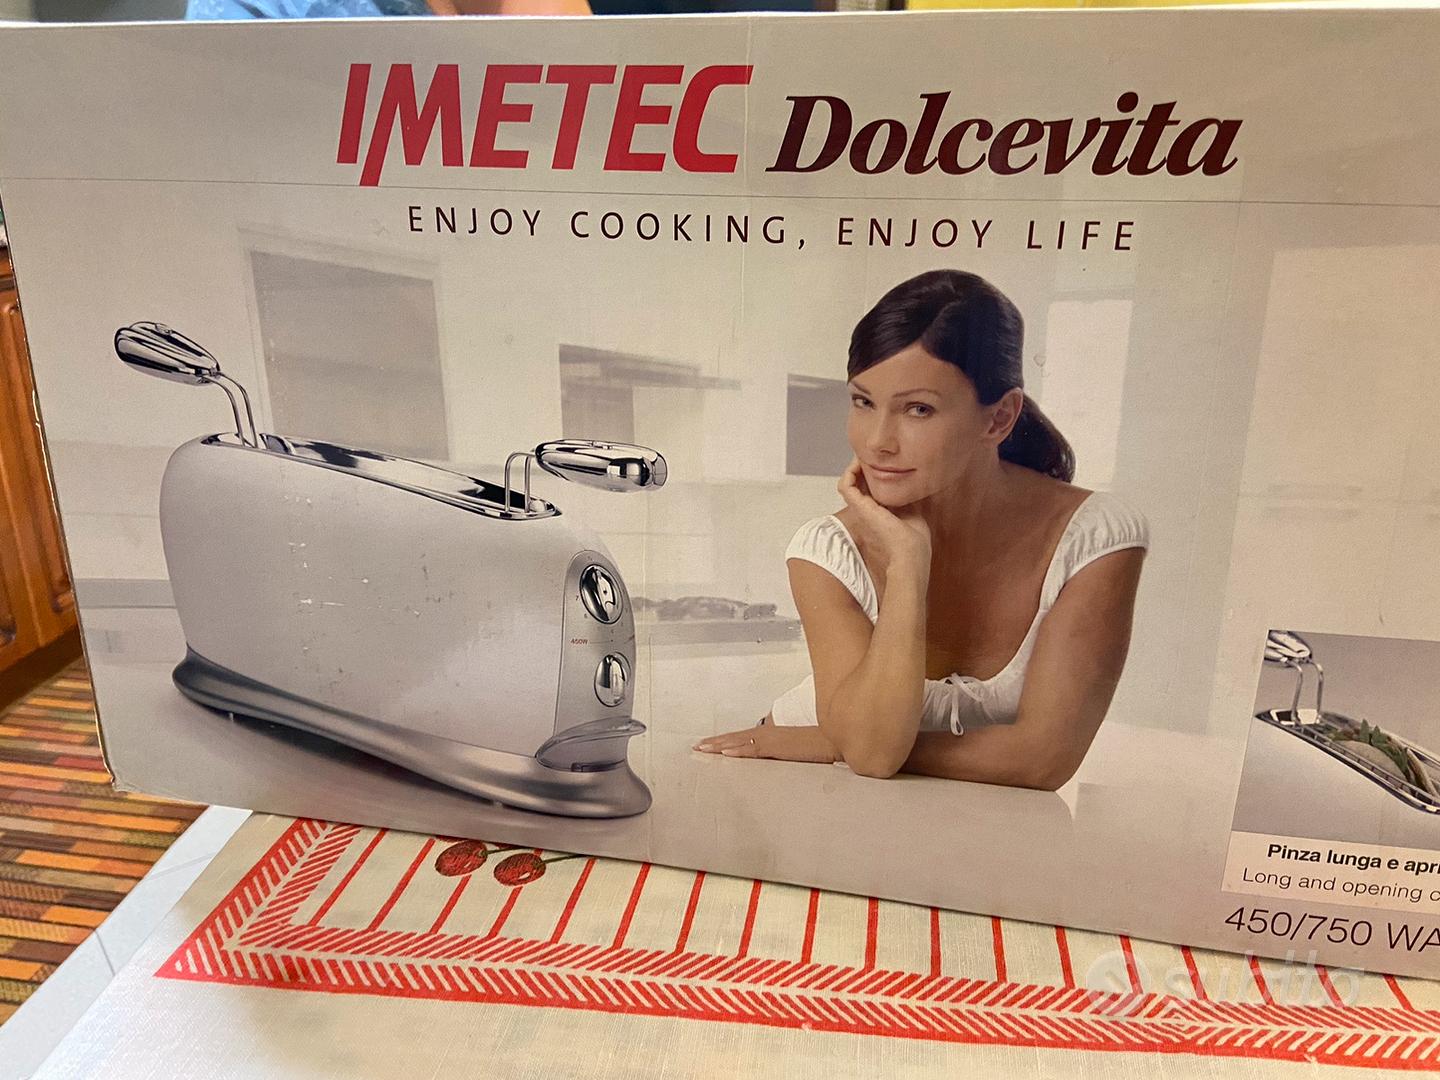 Tosta pane elettrico Imetec Dolcevita - Elettrodomestici In vendita a Torino